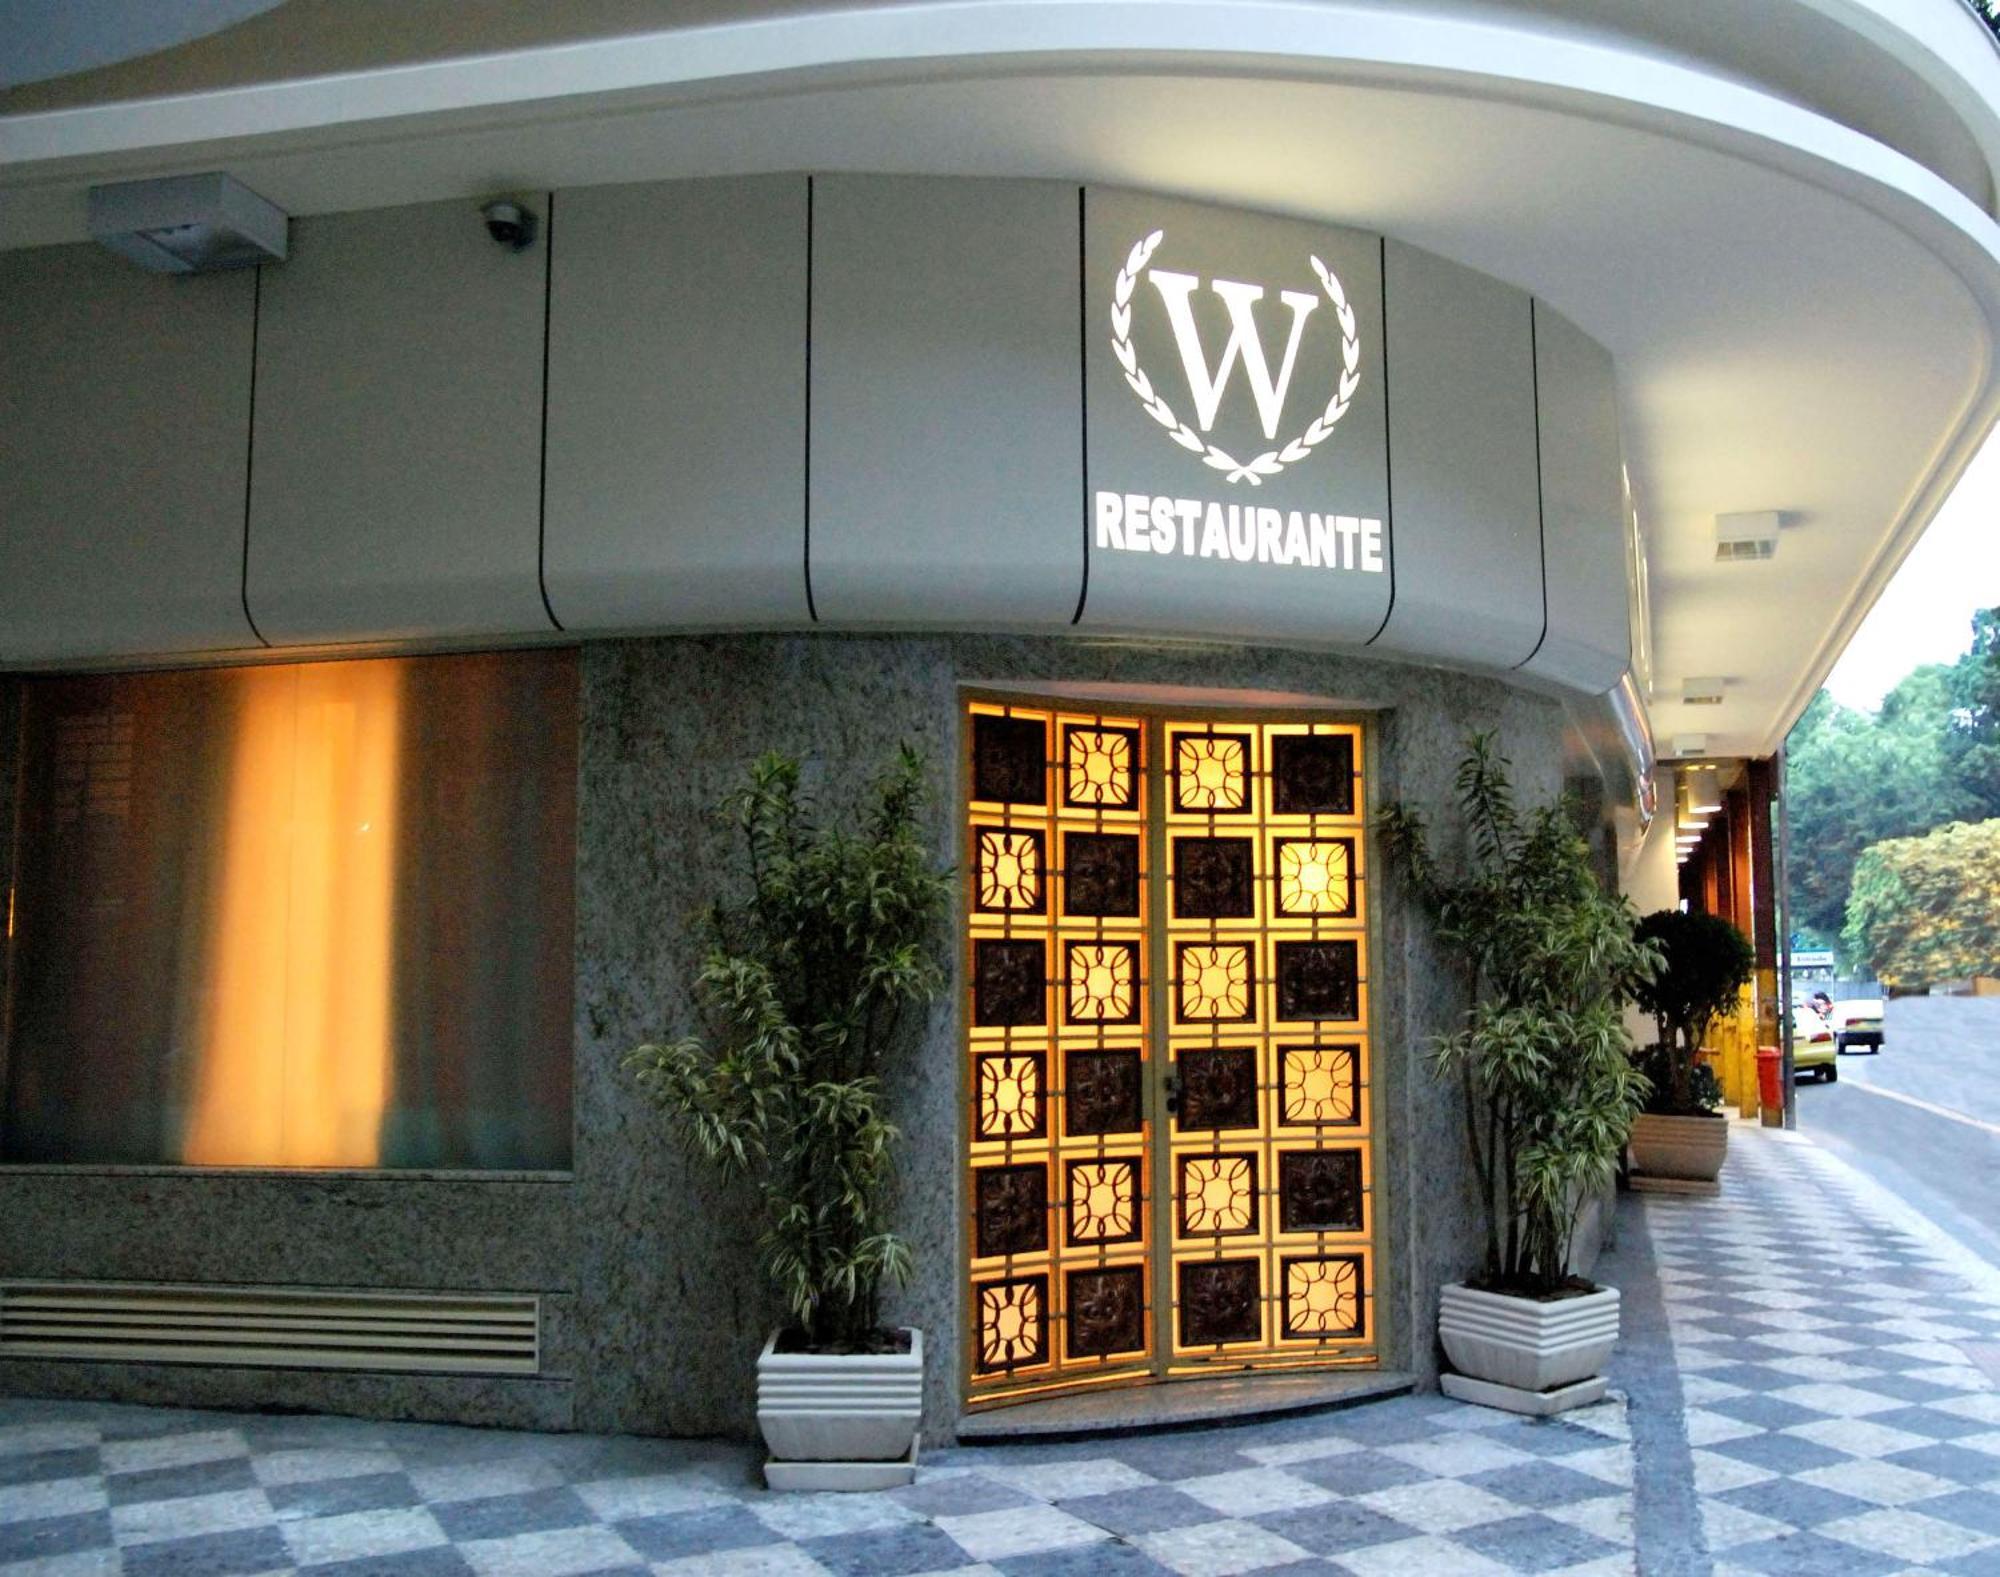 Windsor Asturias Hotel Rio de Janeiro Exterior foto